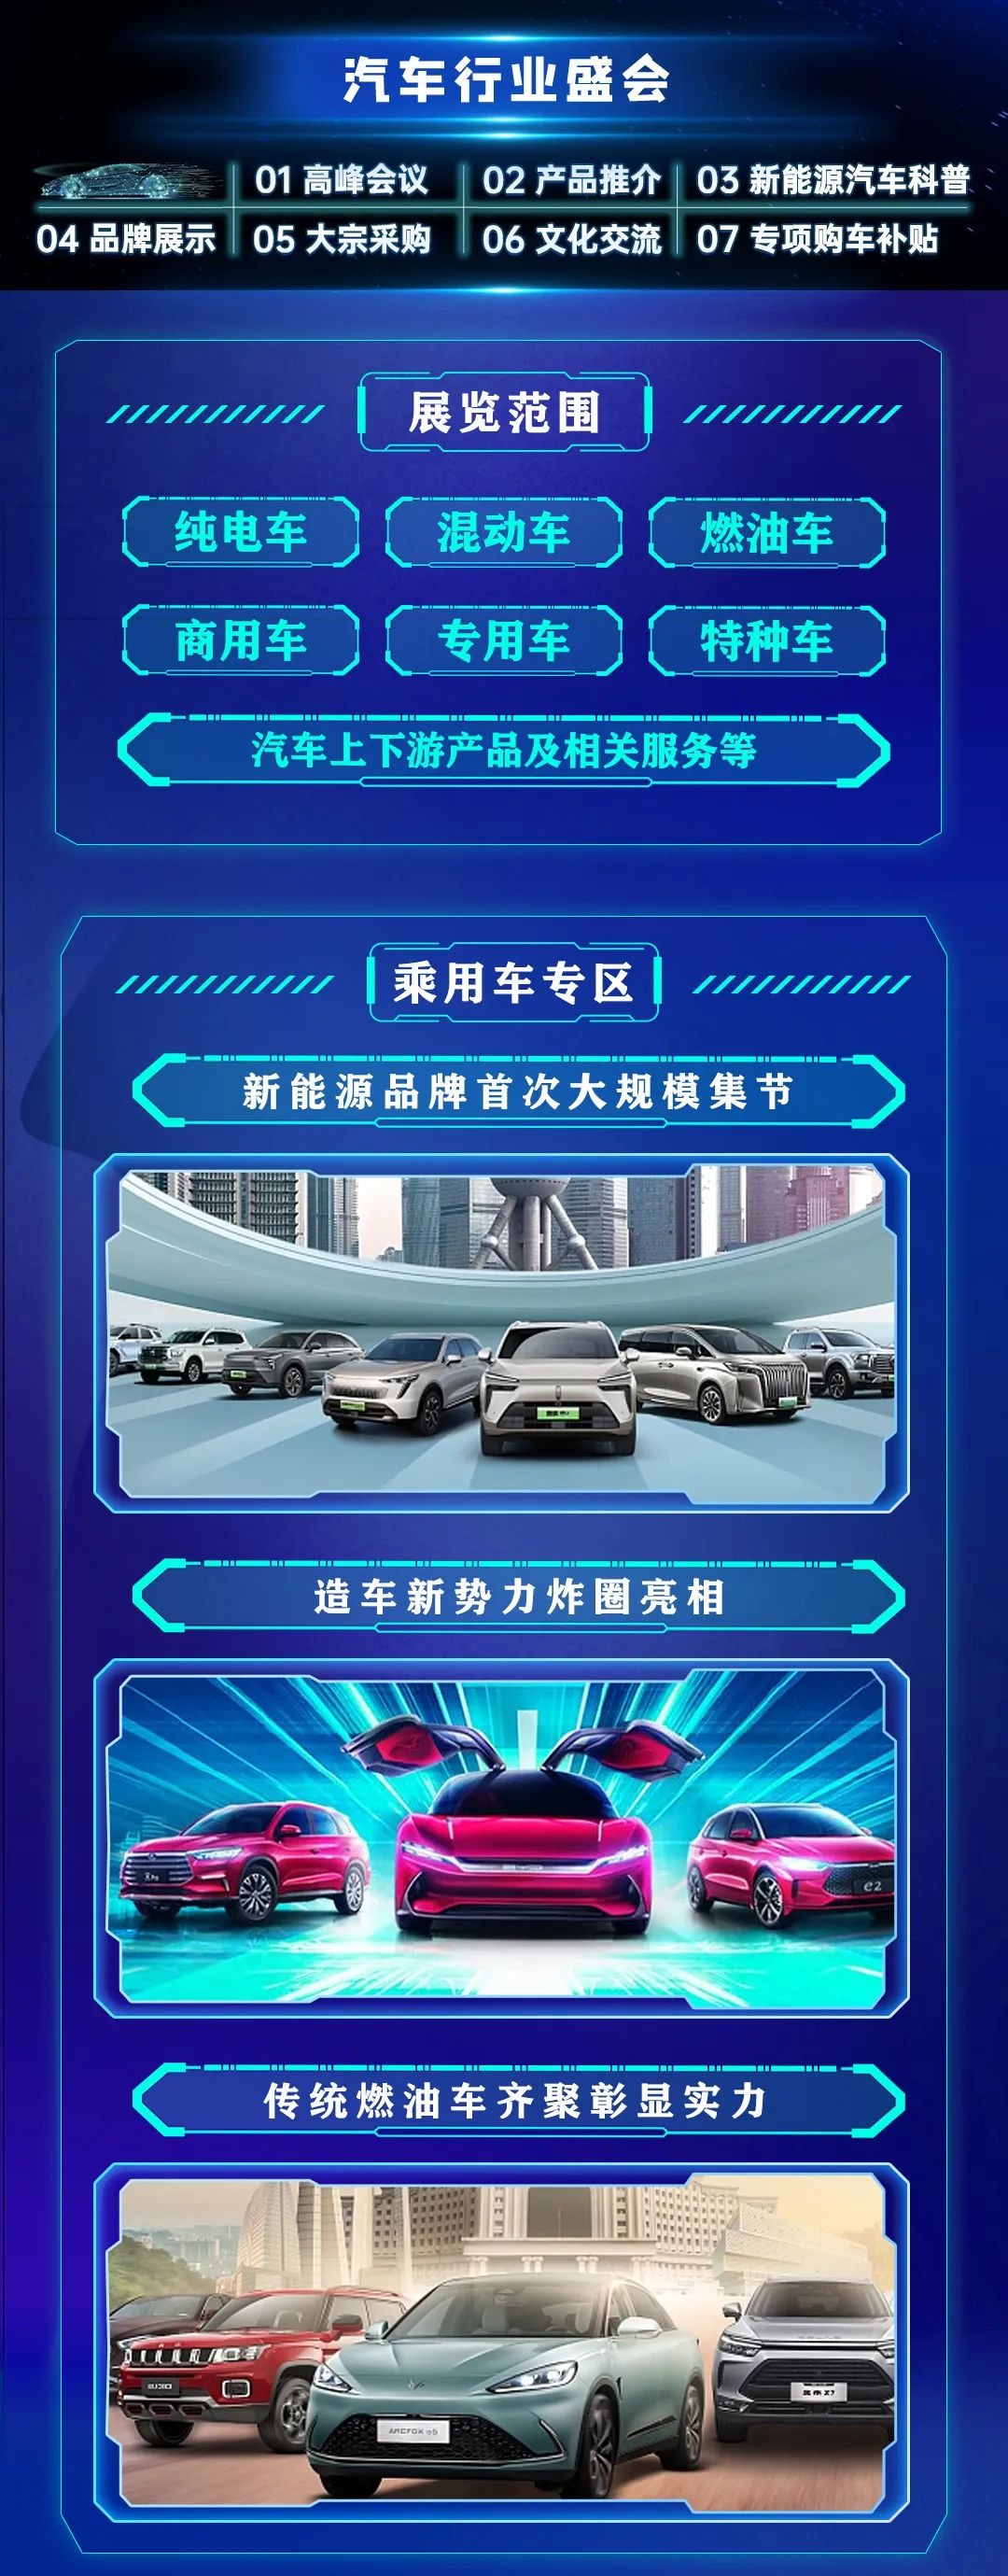 沈阳新能源汽车博览会